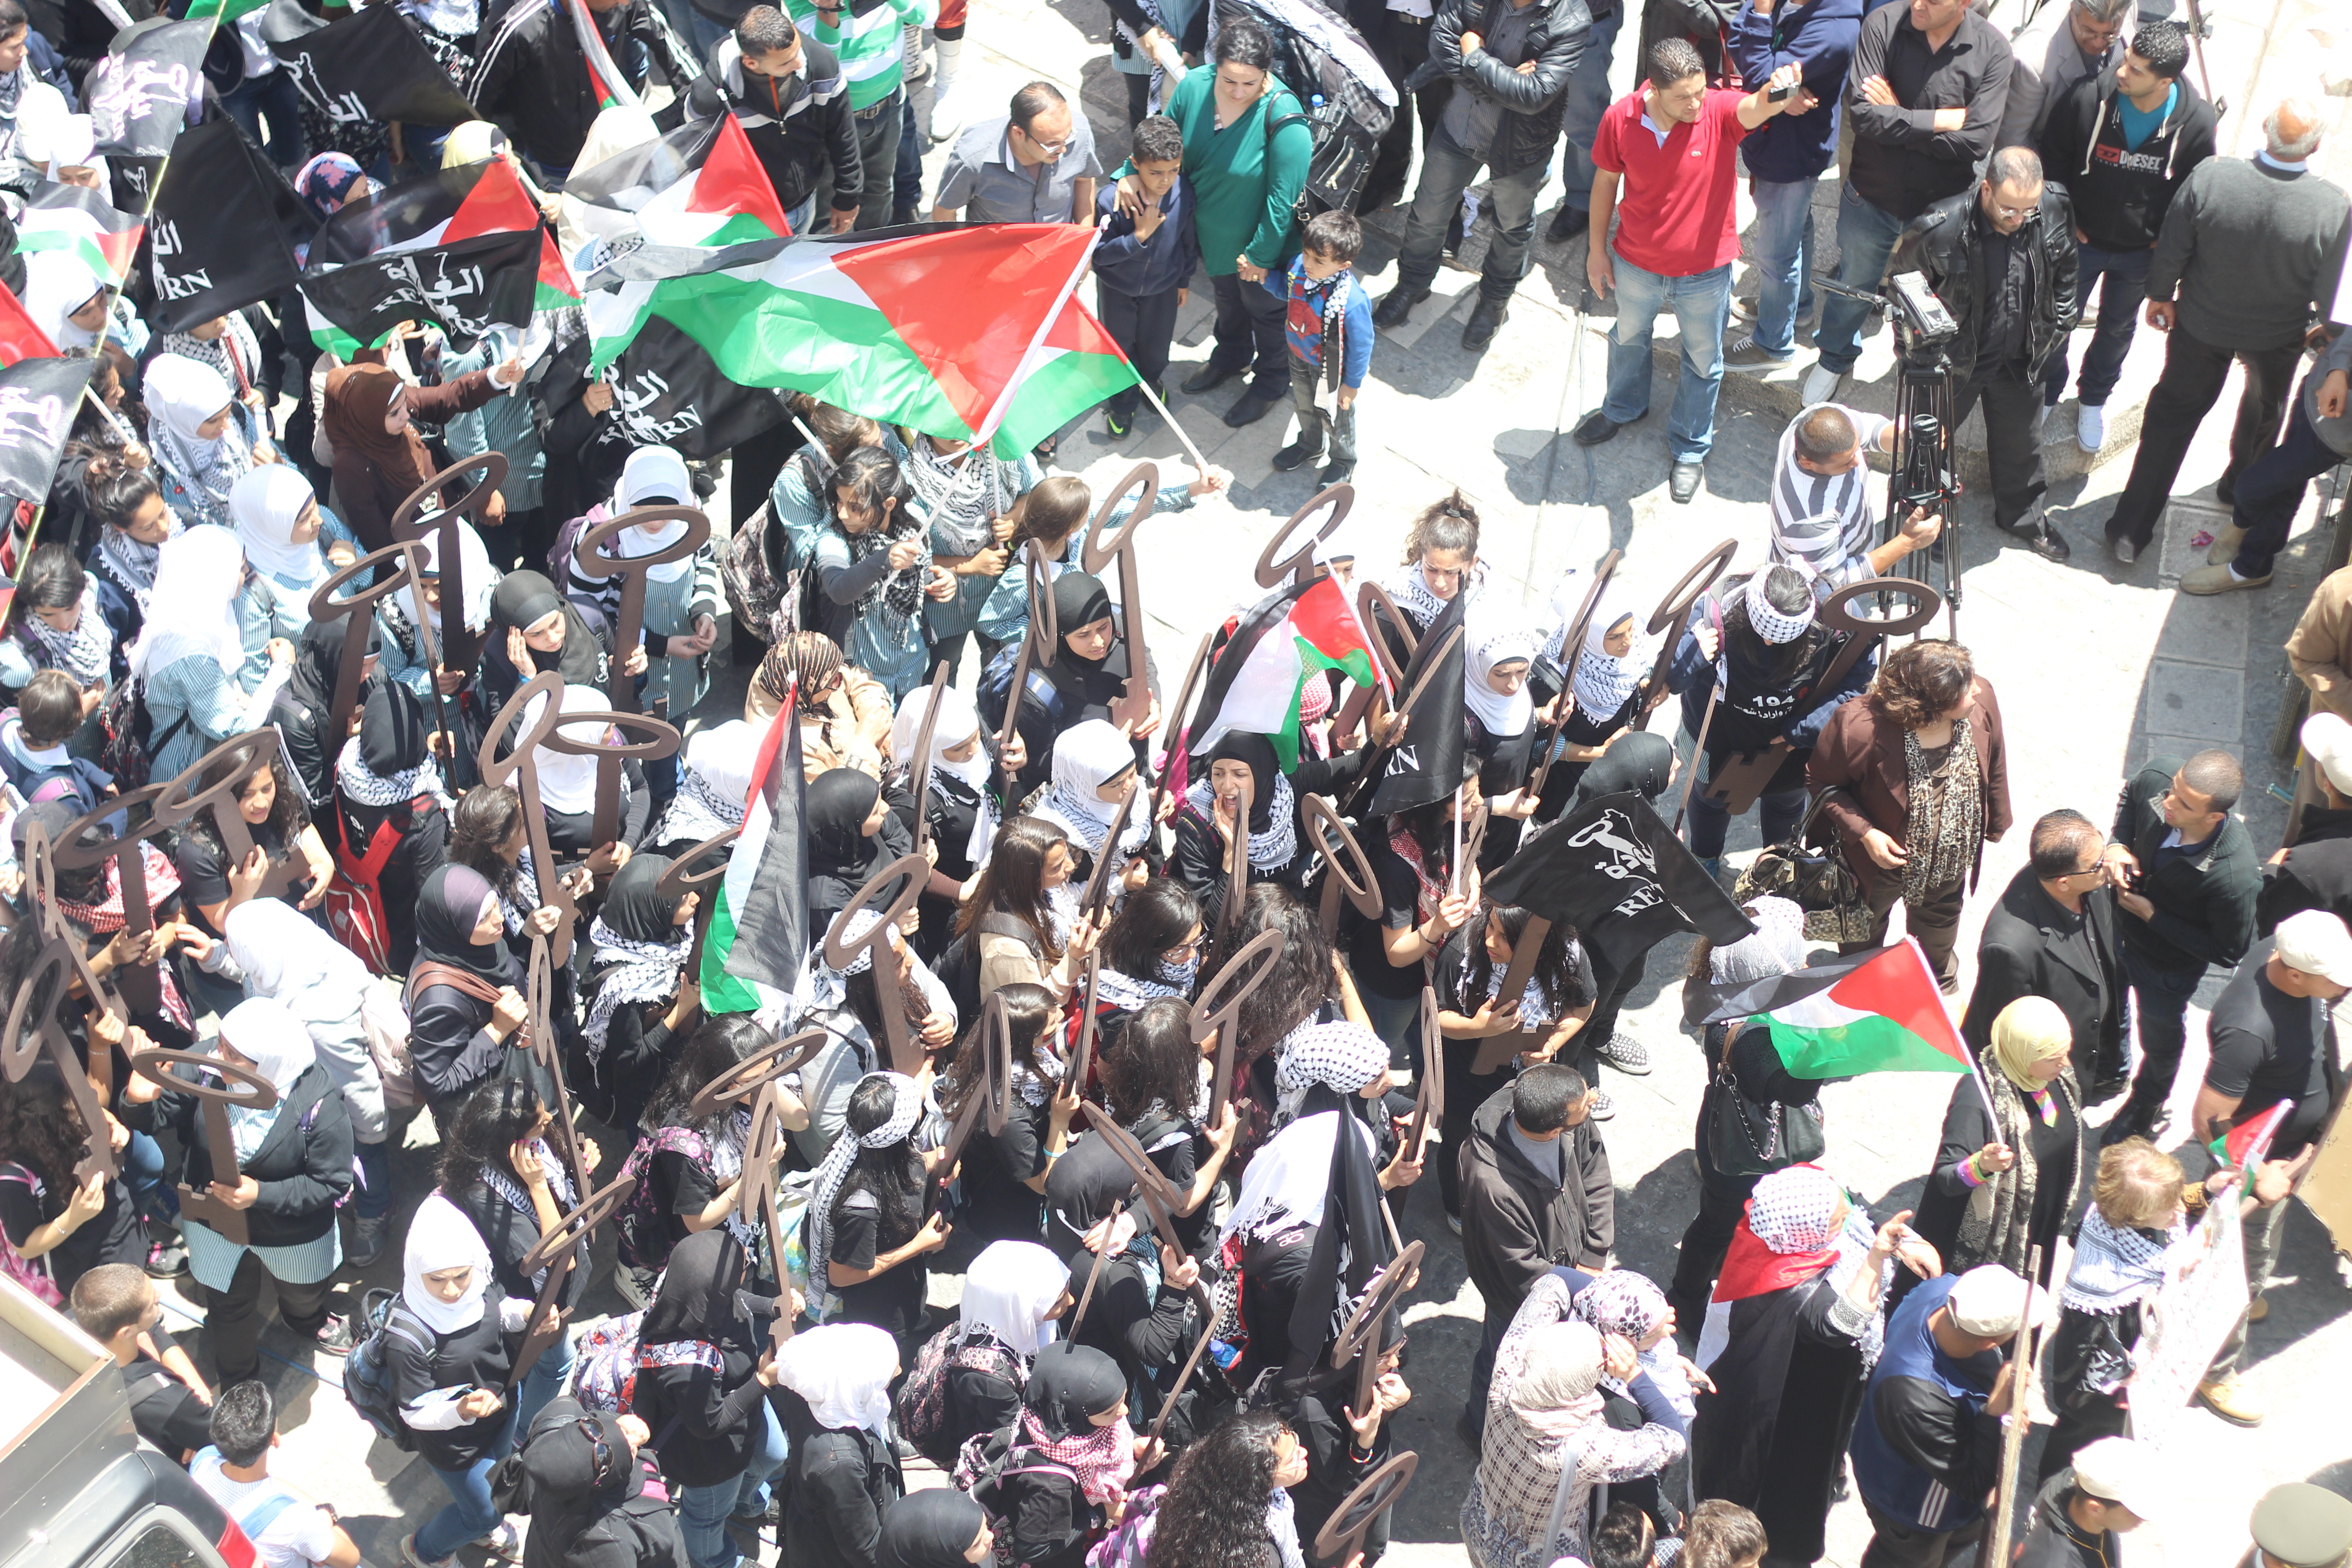  مدراس نابلس في مسيرة للتضامن مع الأقصى بعد تعليق الدوام